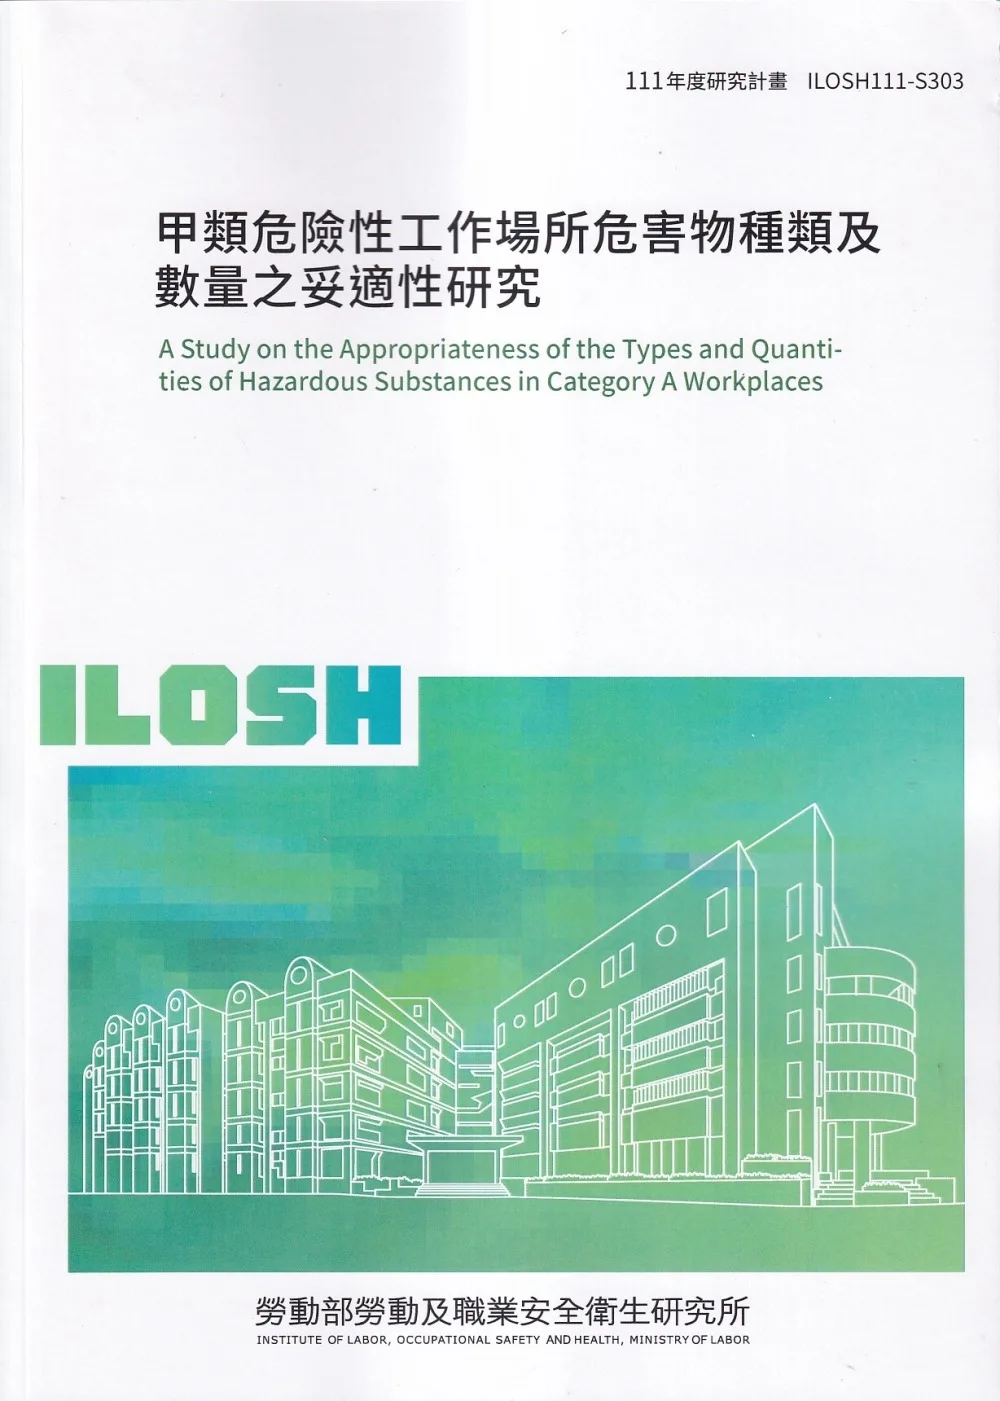 甲類危險性工作場所危害物種類及數量之妥適性研究ILOSH111-S303